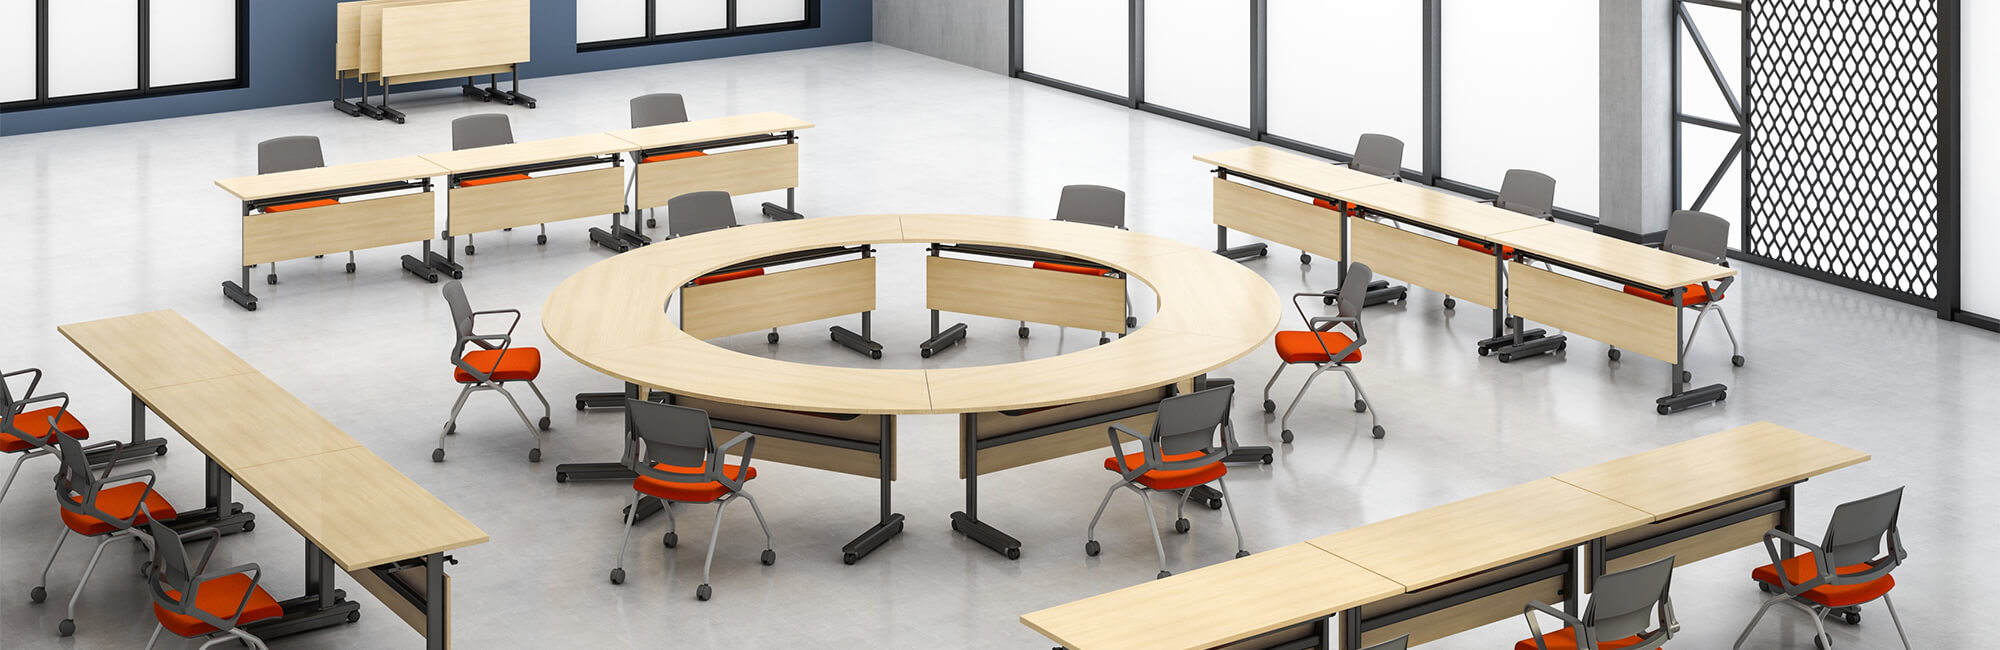 طاولة تدريب خشبية وكراسي مكتب قابلة للإزالة مع وسائد برتقالية في غرفة التدريب